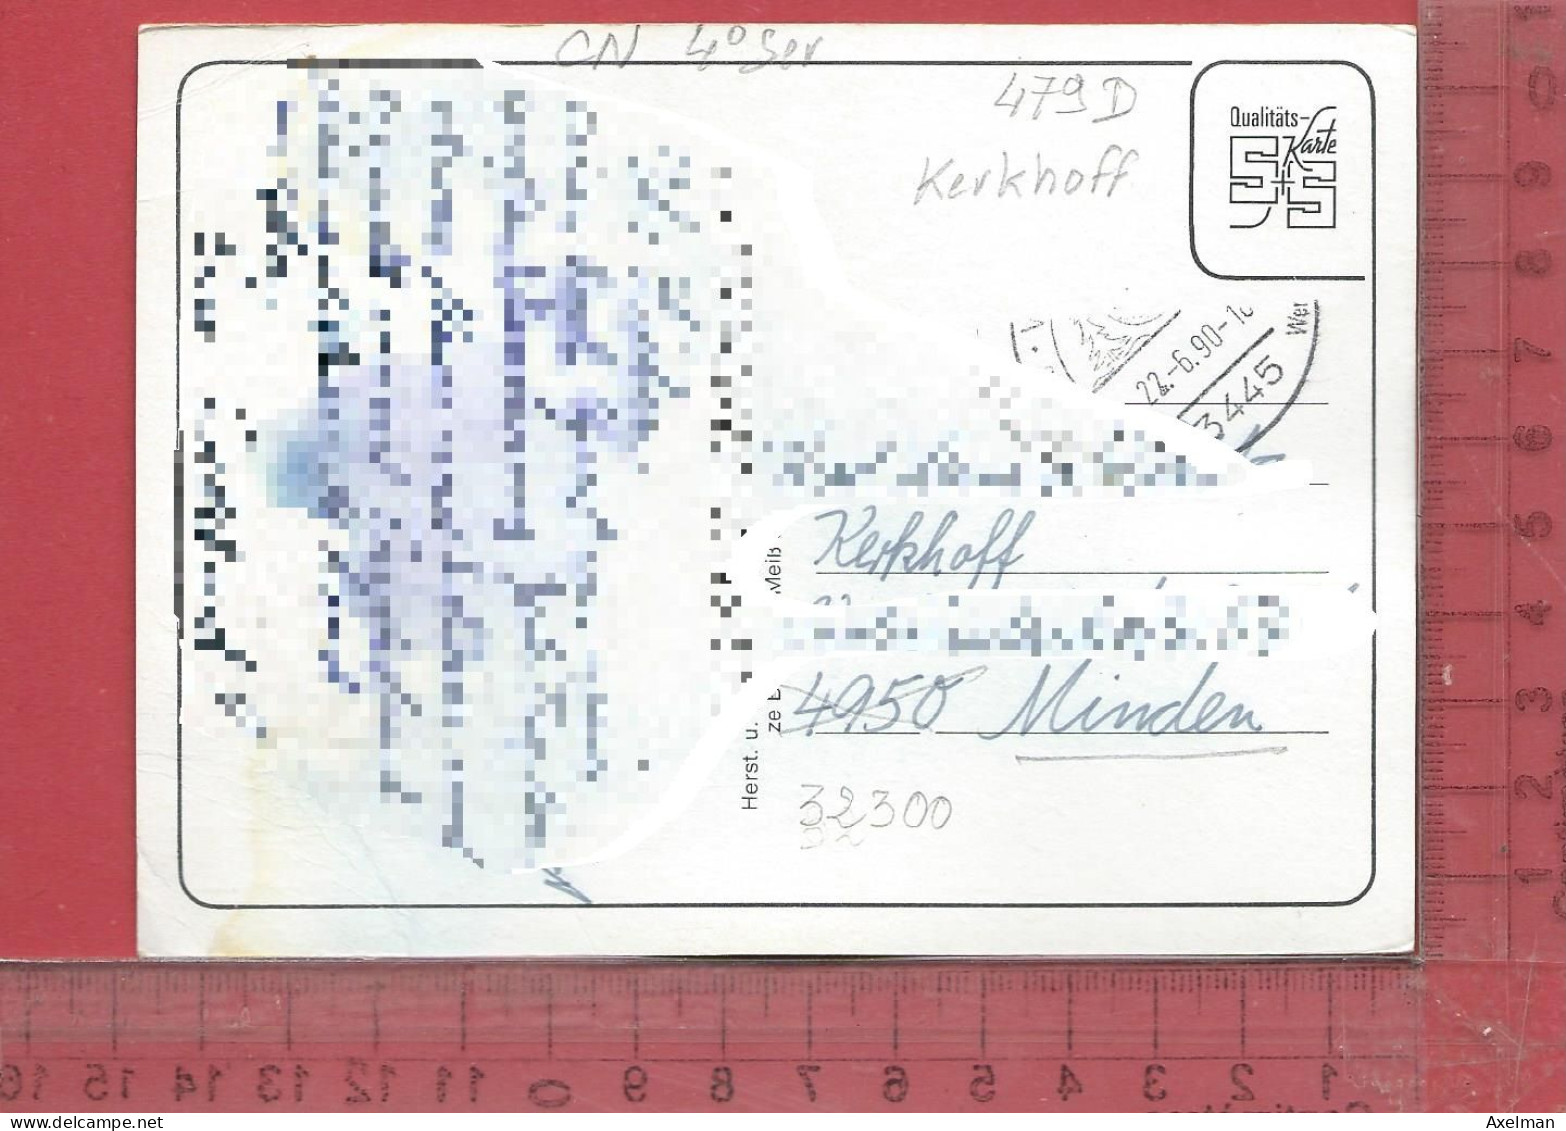 CARTE NOMINATIVE : KERKHOFF  à  32300  Minden  Allemagne - Genealogy